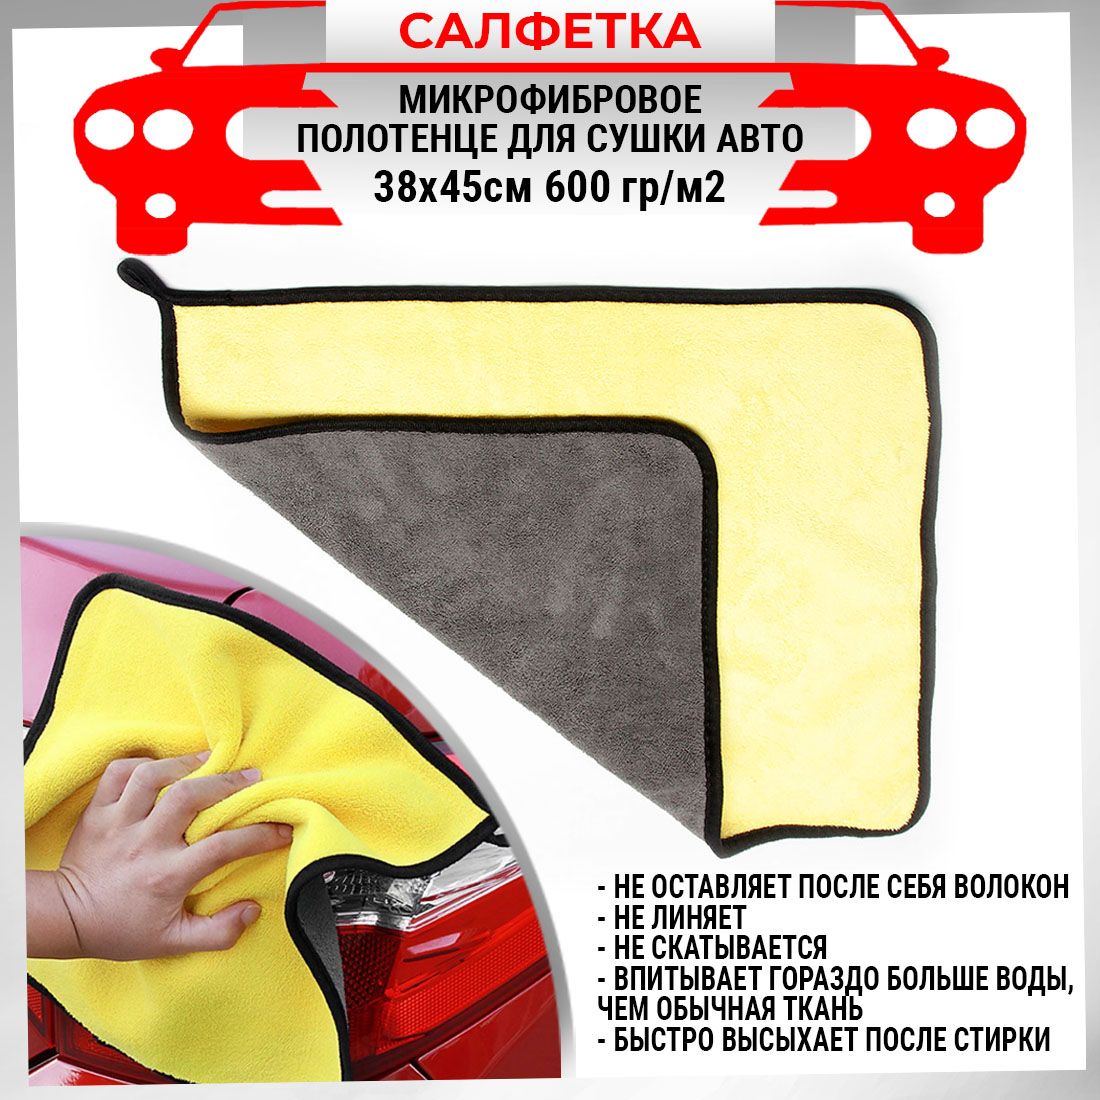 Микрофибровое полотенце для сушки авто 38х45см 600 гр/м2